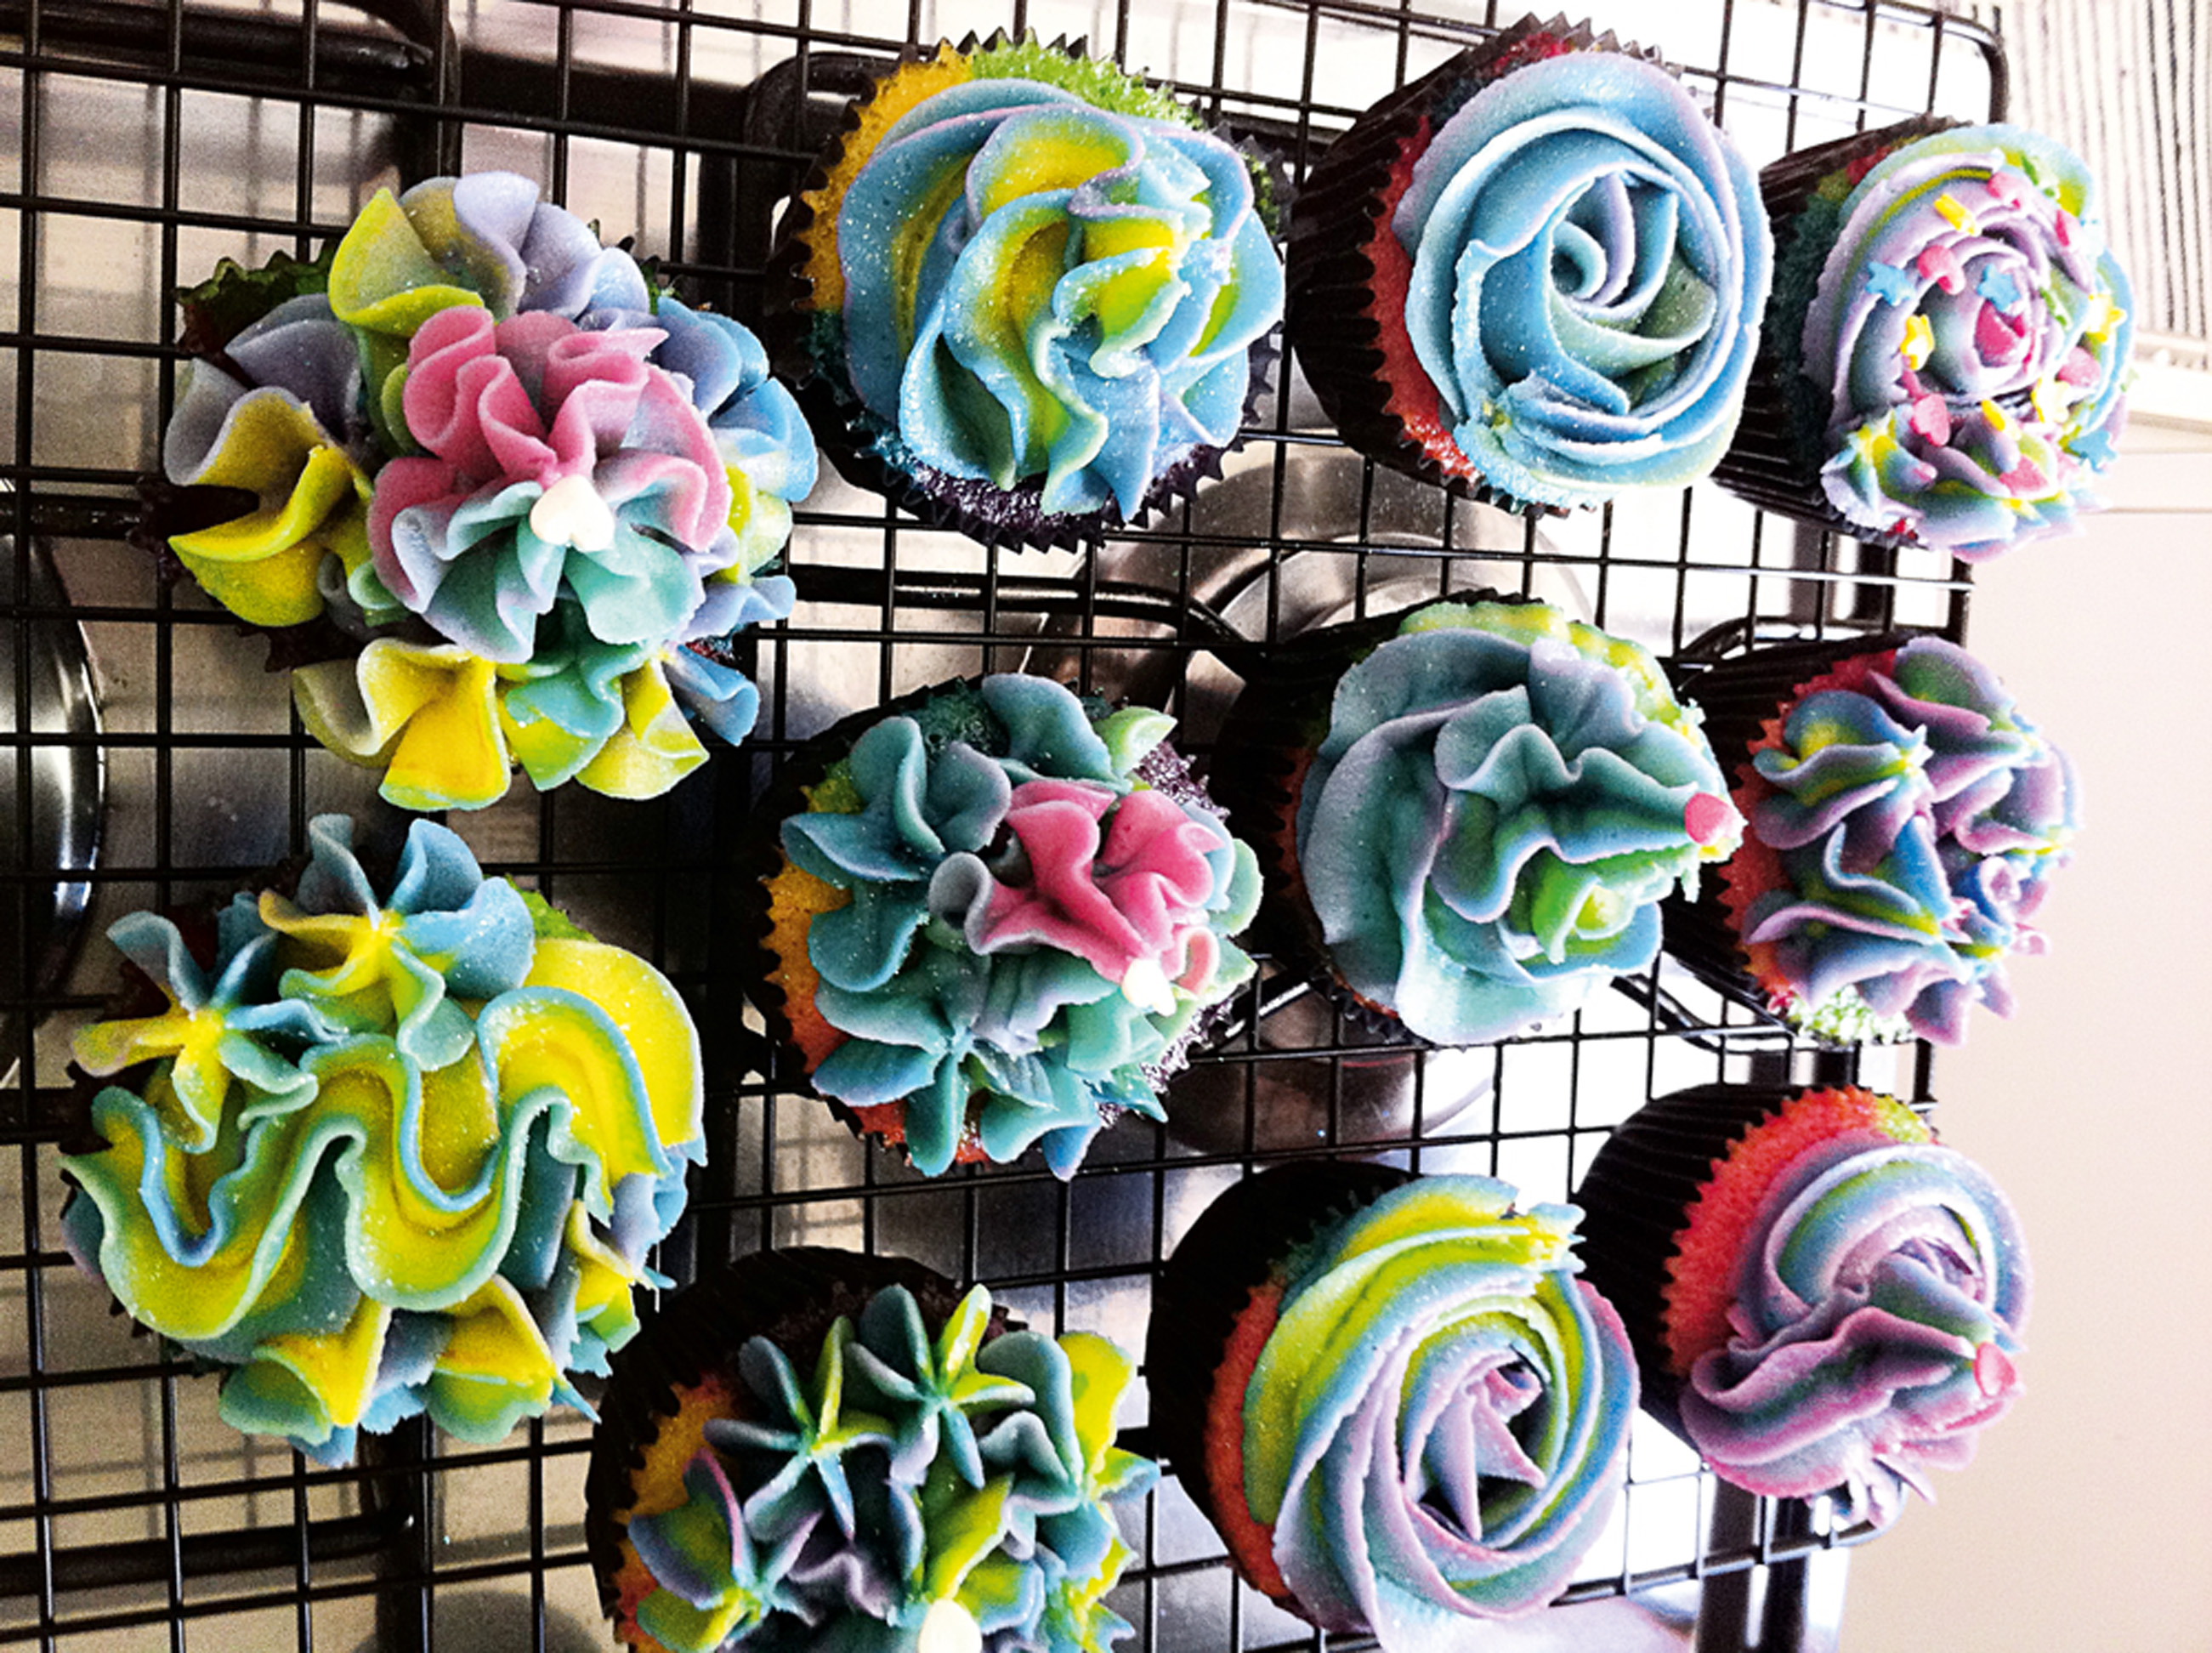 16h - “Nas tardes livres preparo cupcakes, gosto dos de manteiga e coloridos.